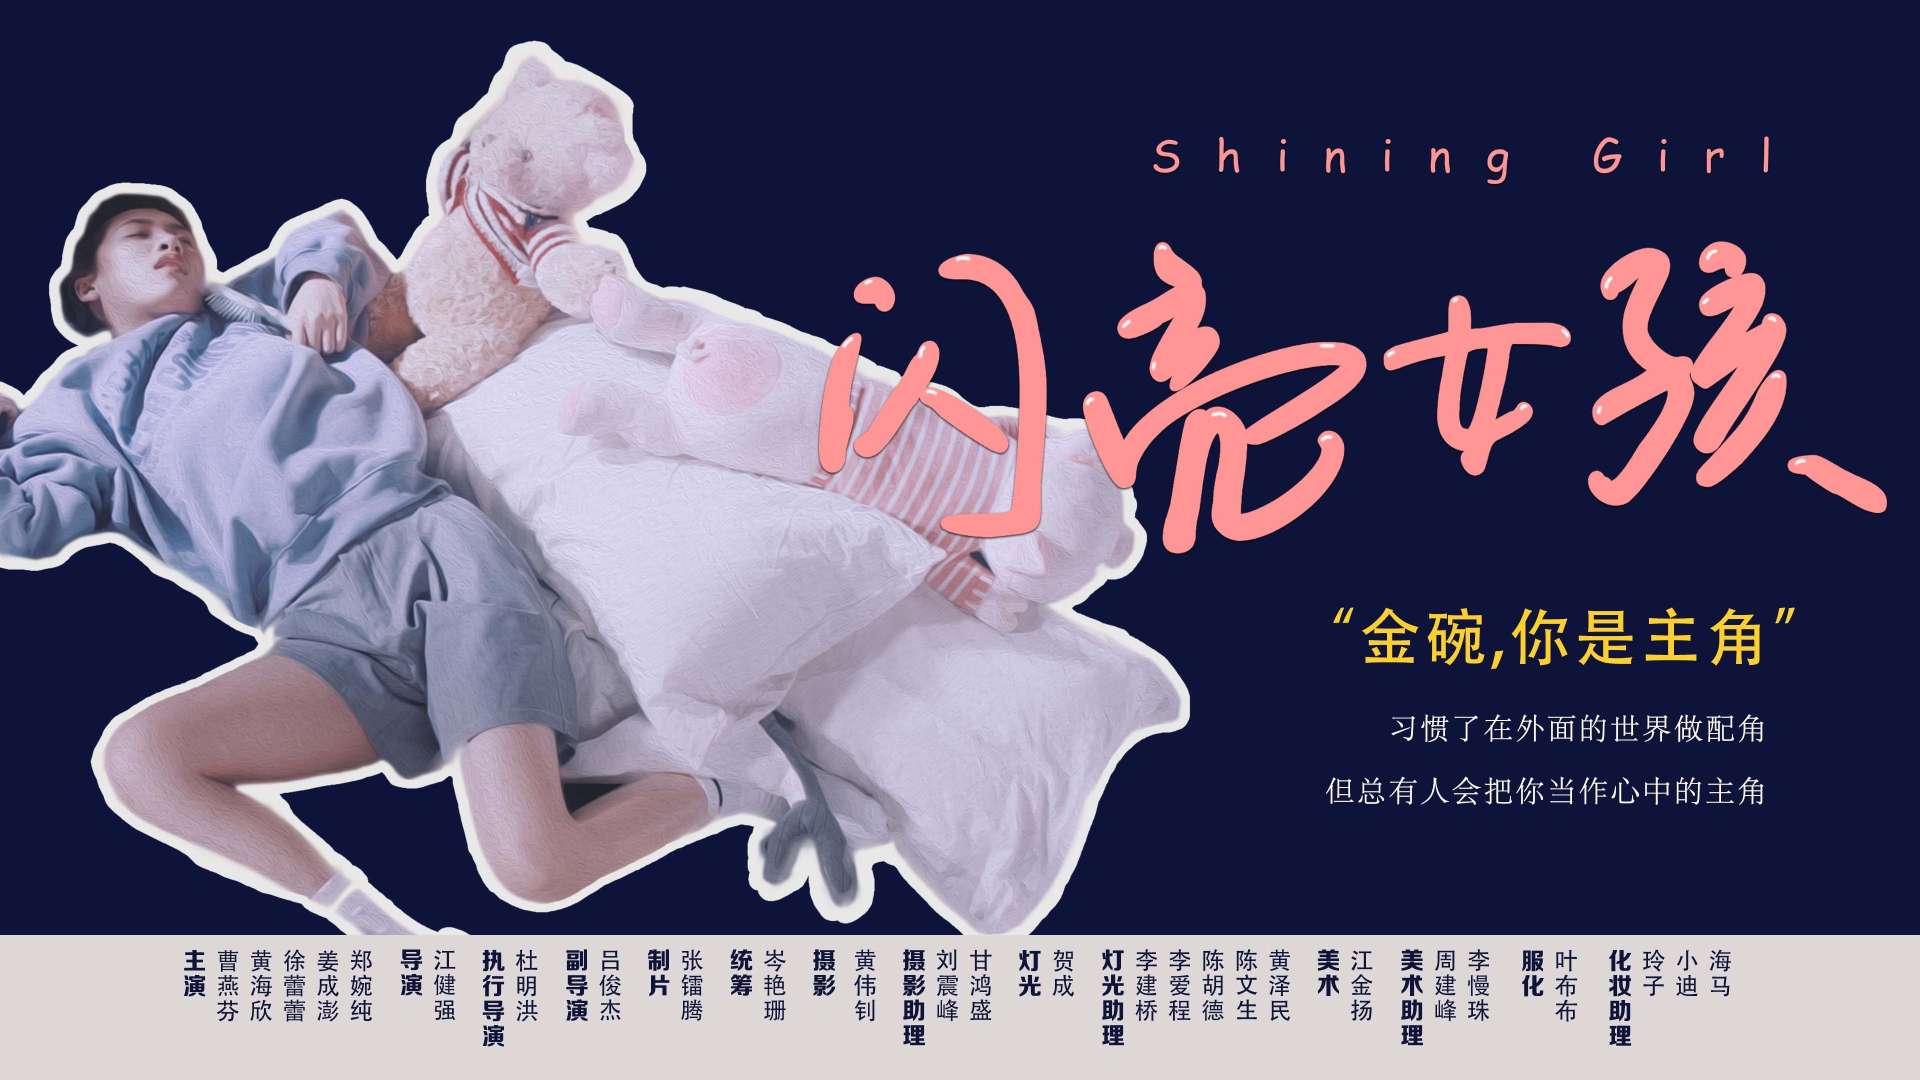 微电影「闪亮女孩Shining girl」DIR.